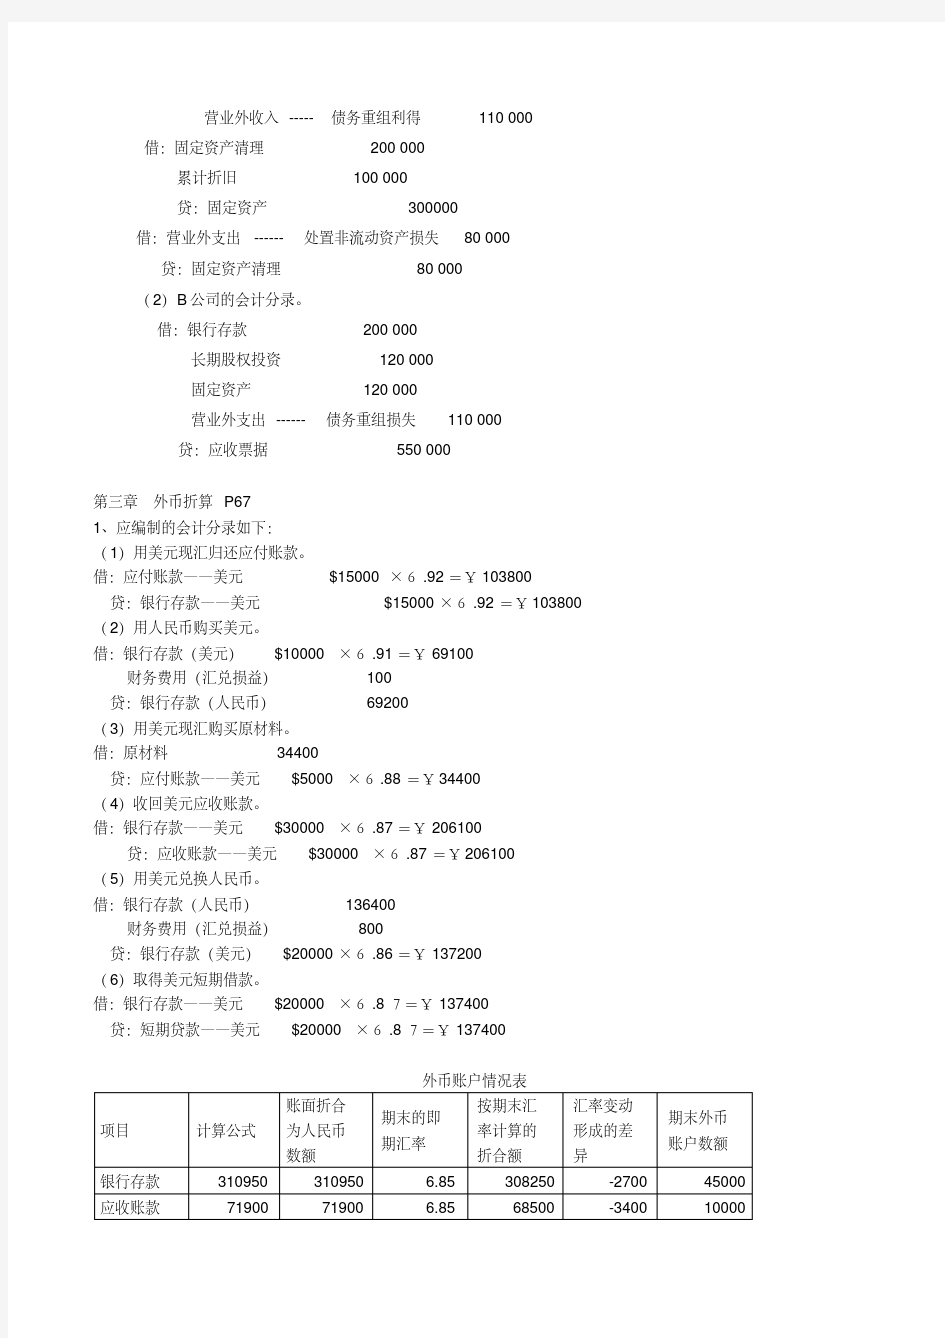 高级会计学人大版_课后习题资料-新版.pdf